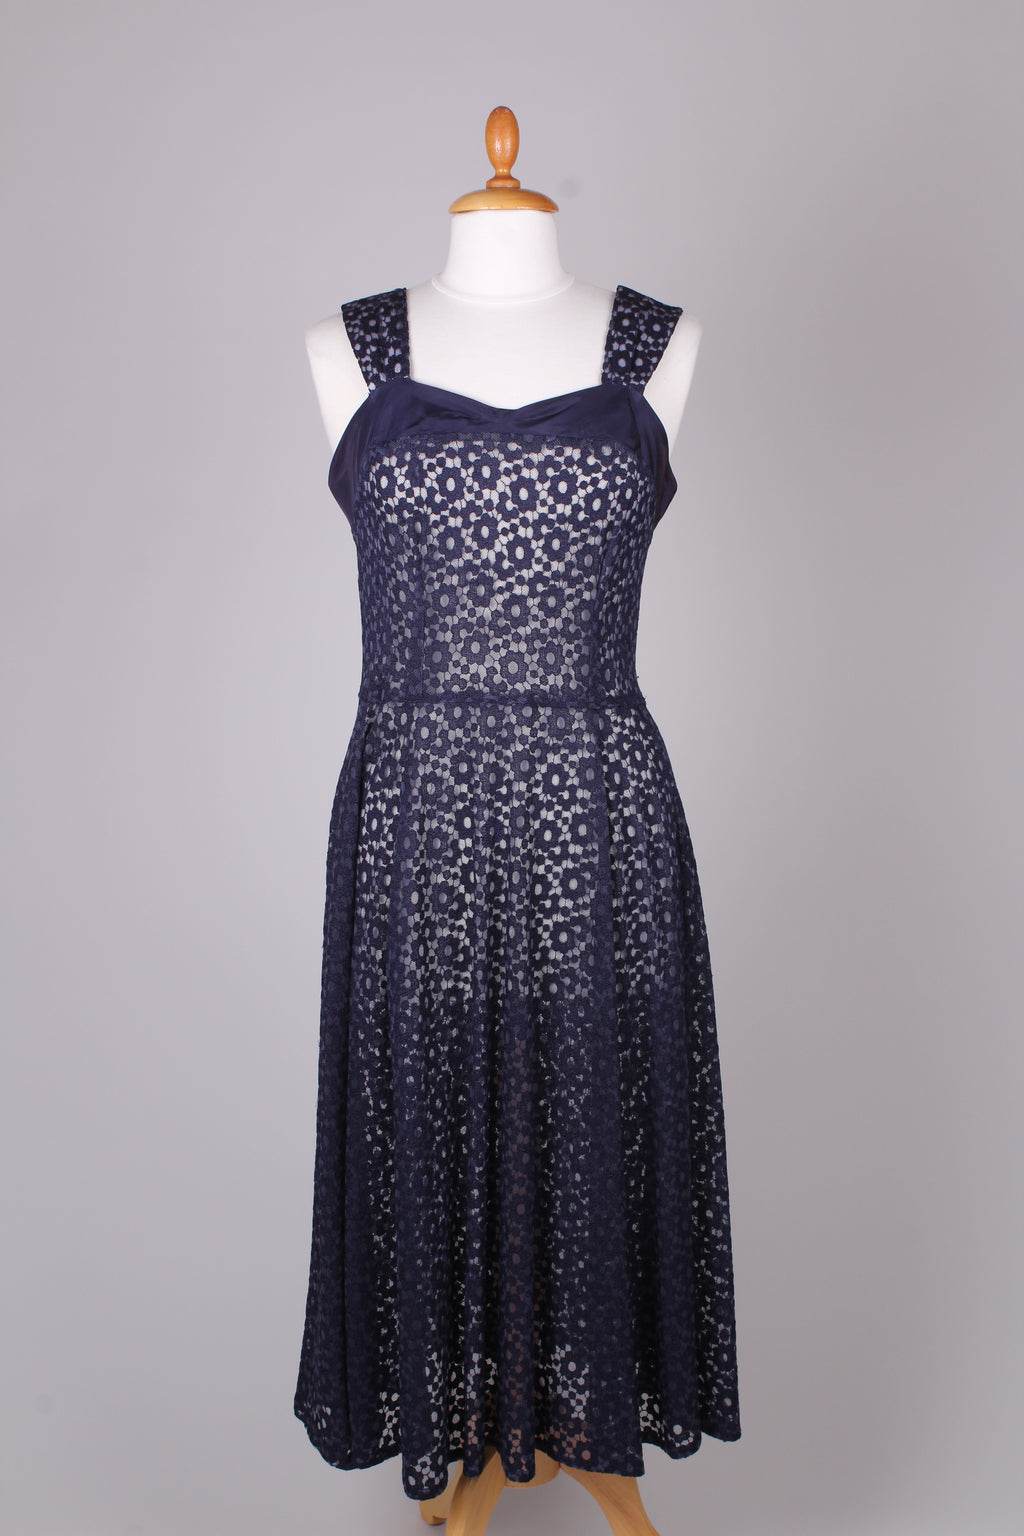 klima Populær Vise dig 50'er kjoler i vintage - vintagekjoler fra 50erne – Vintage Divine v.  memery Aps